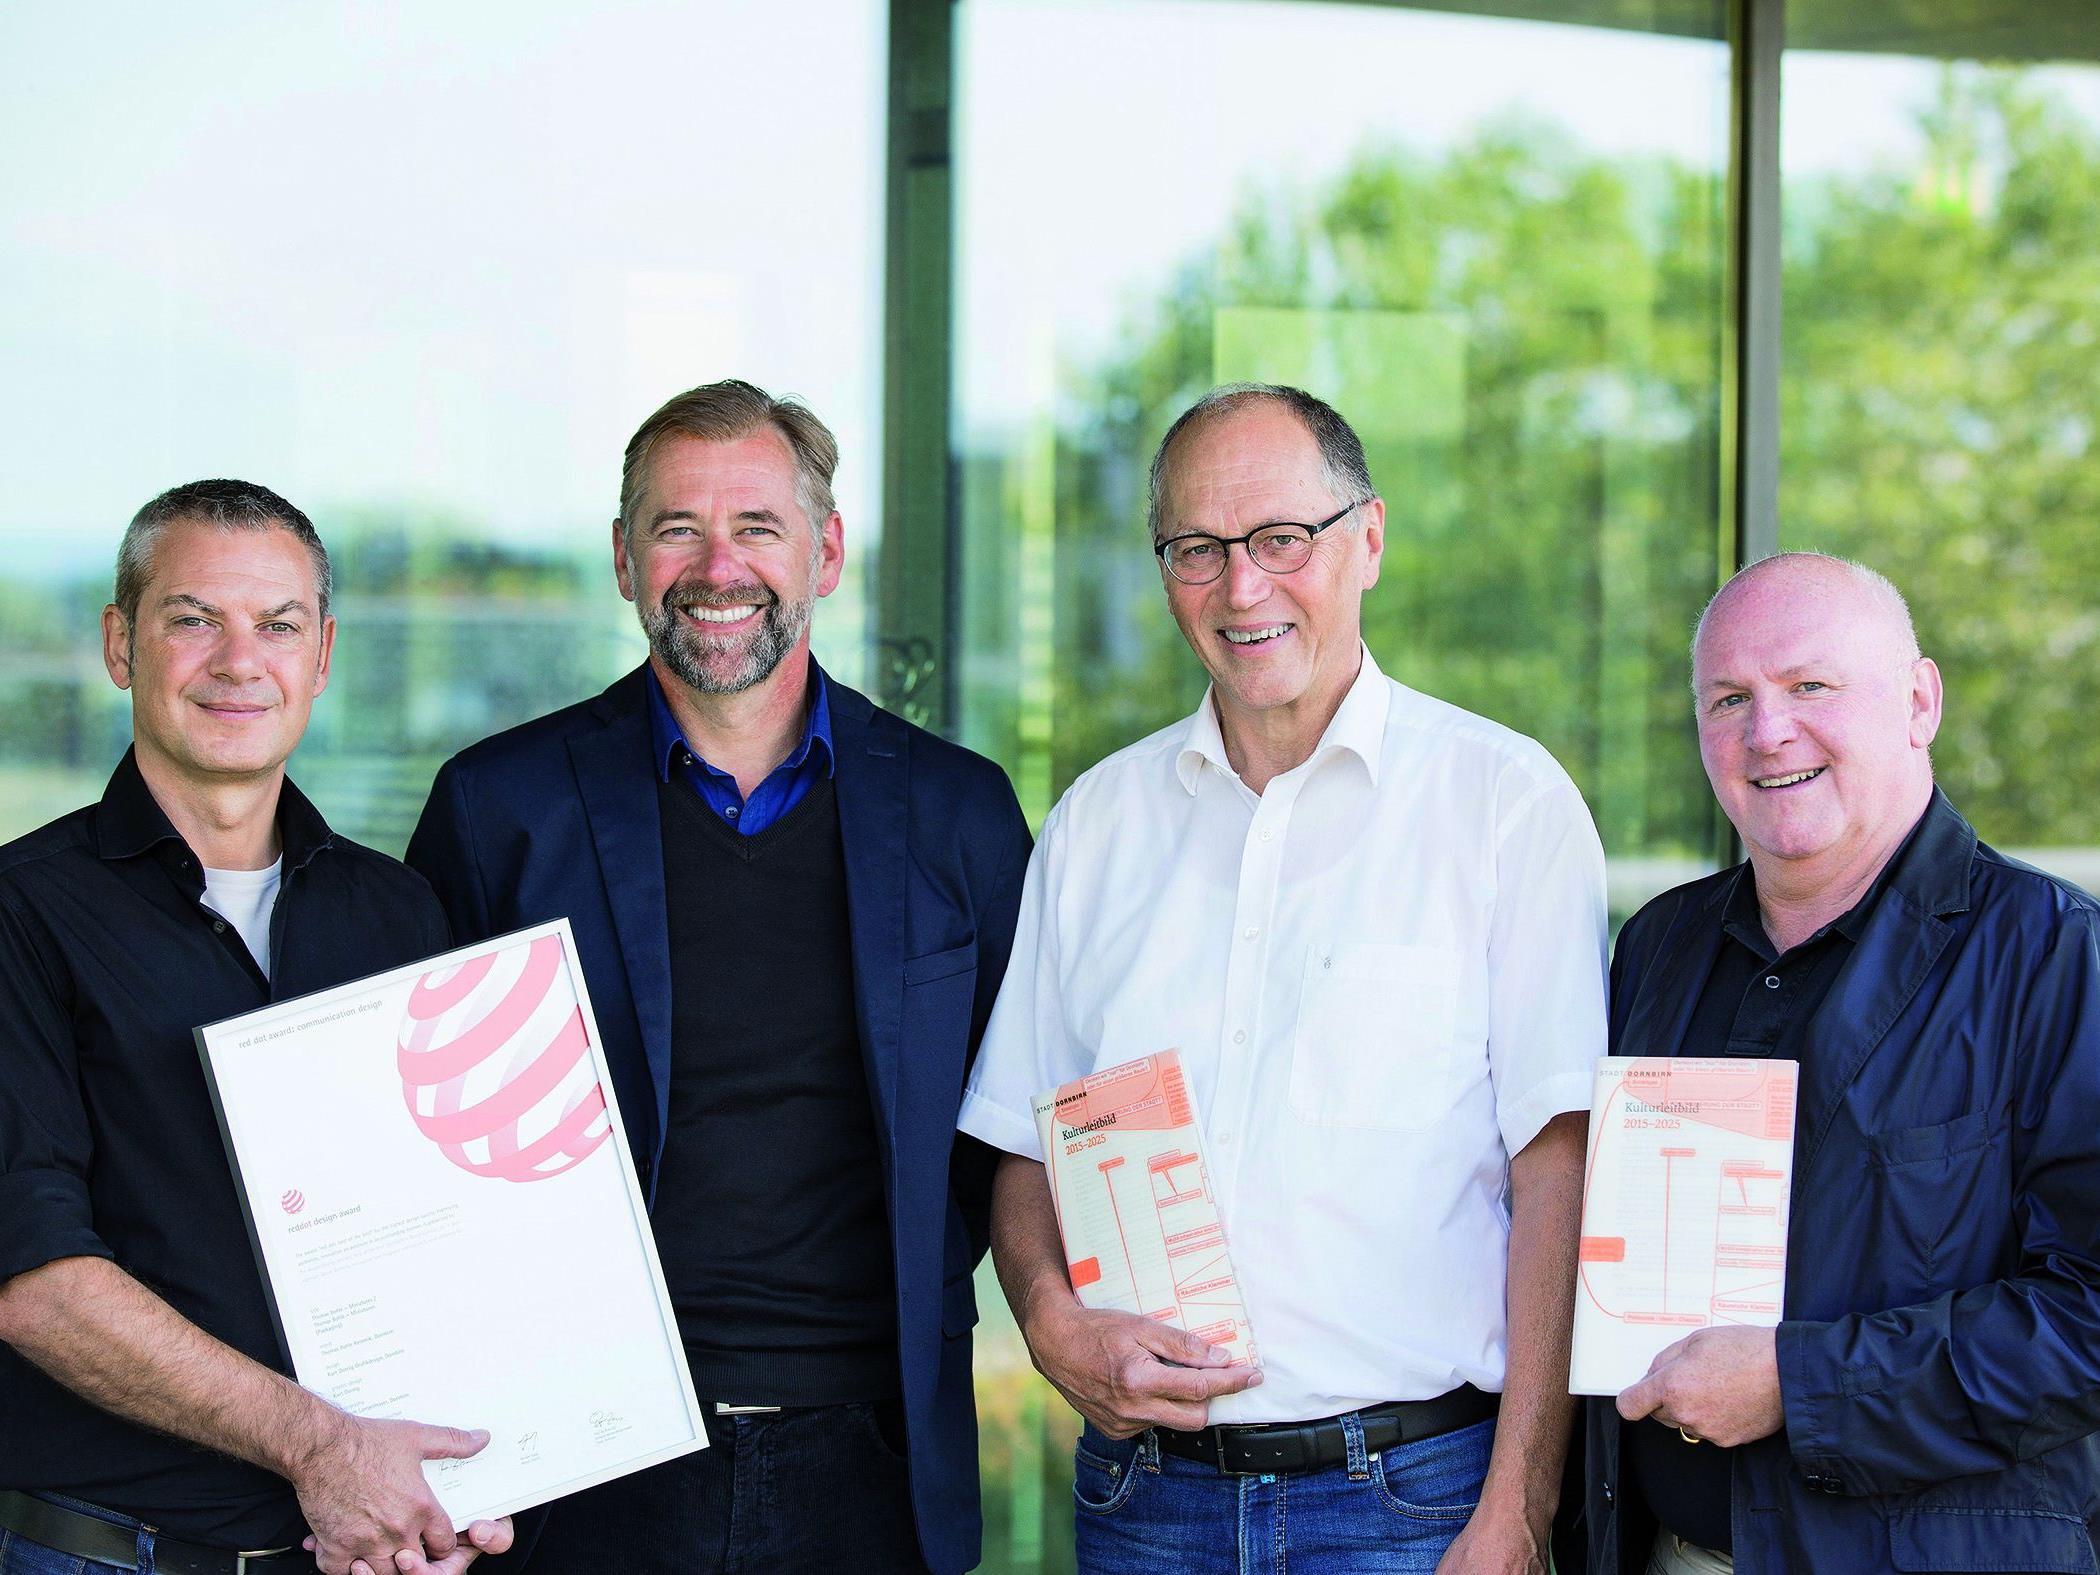 Kurt Dornig (Dornig Grafikdesign), Martin Köck (Druckerei Thurnher), Martin Ruepp (Vizebürgermeister Dornbirn) und Roland Jörg (Kulturamtsleiter Dornbirn) freuen sich über die Auszeichnungen.